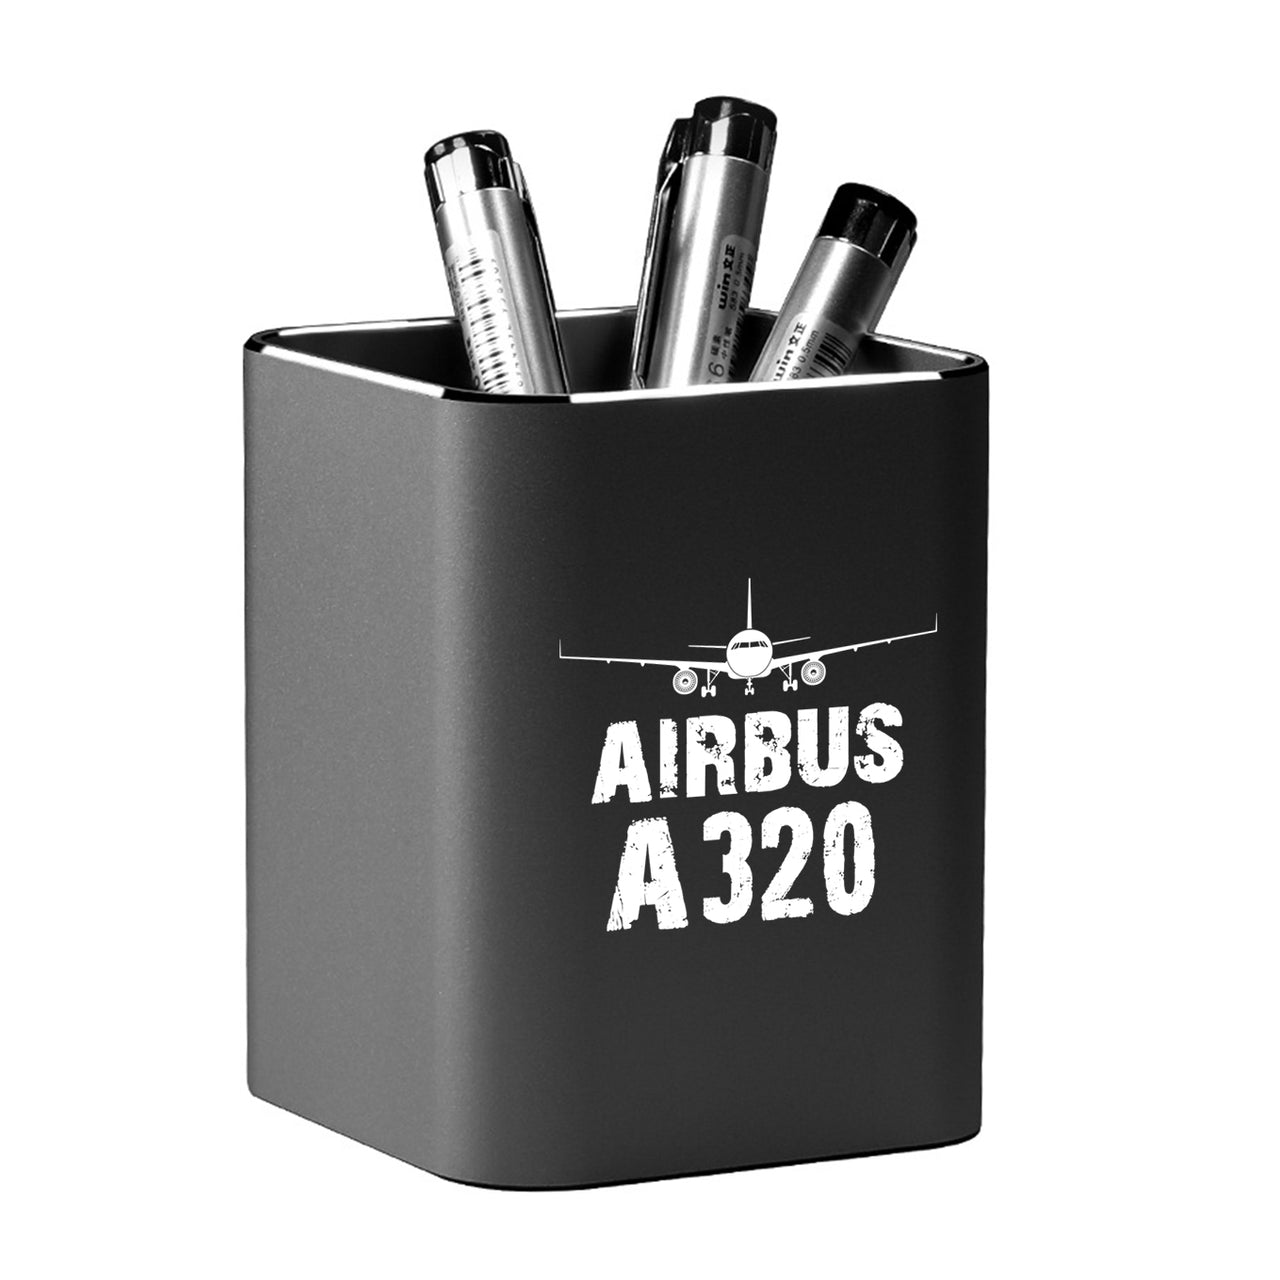 Airbus A320 & Plane Designed Aluminium Alloy Pen Holders